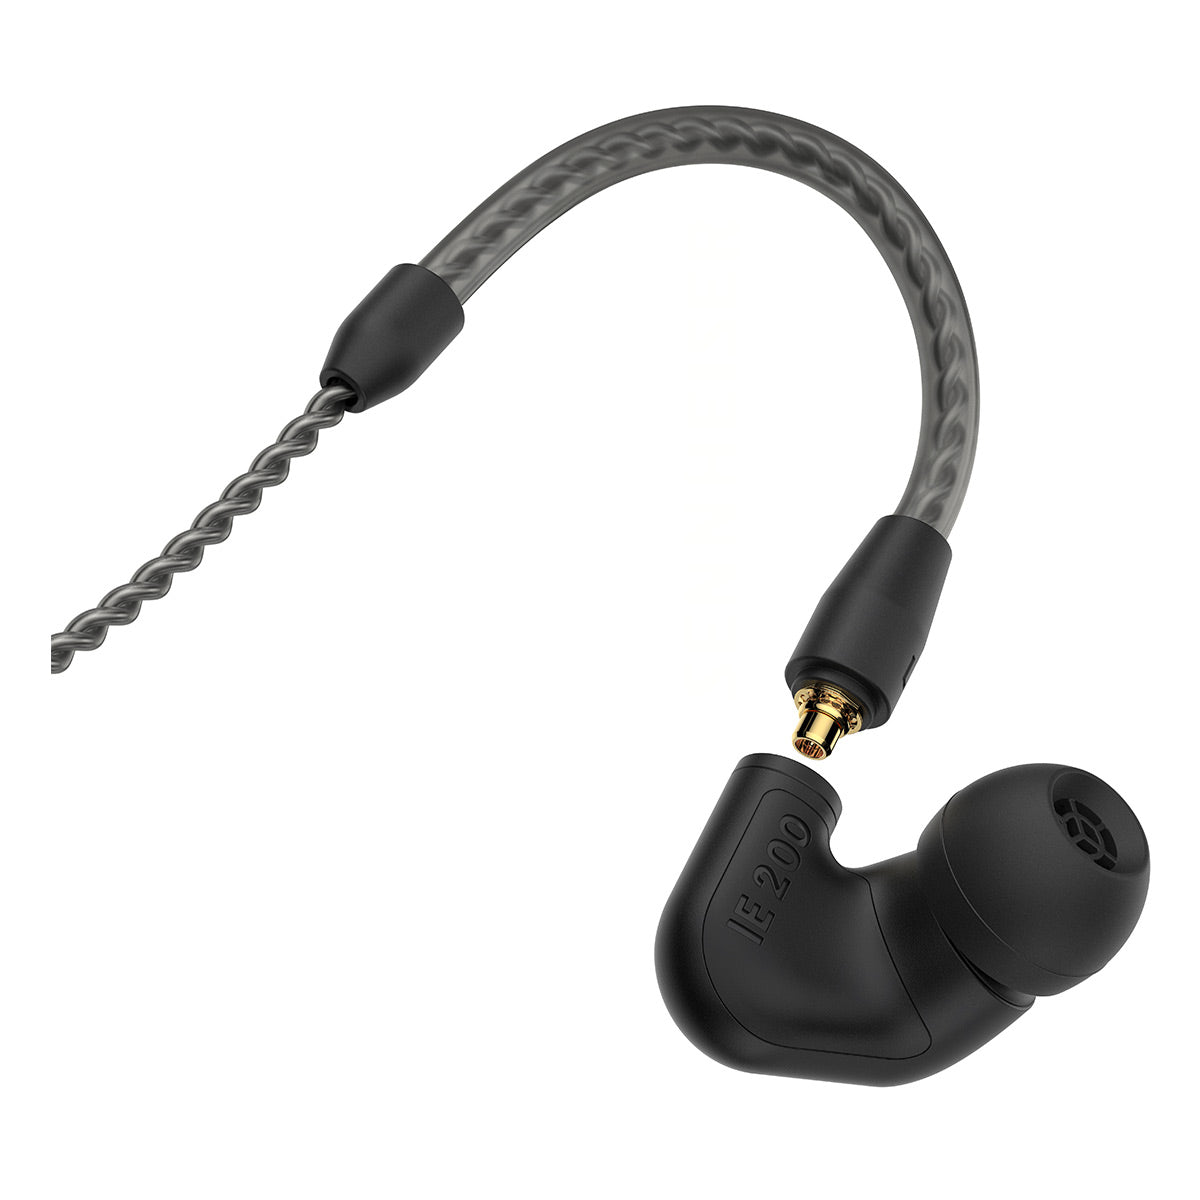 Sennheiser IE 200 Wired In-Ear Monitor Headphones